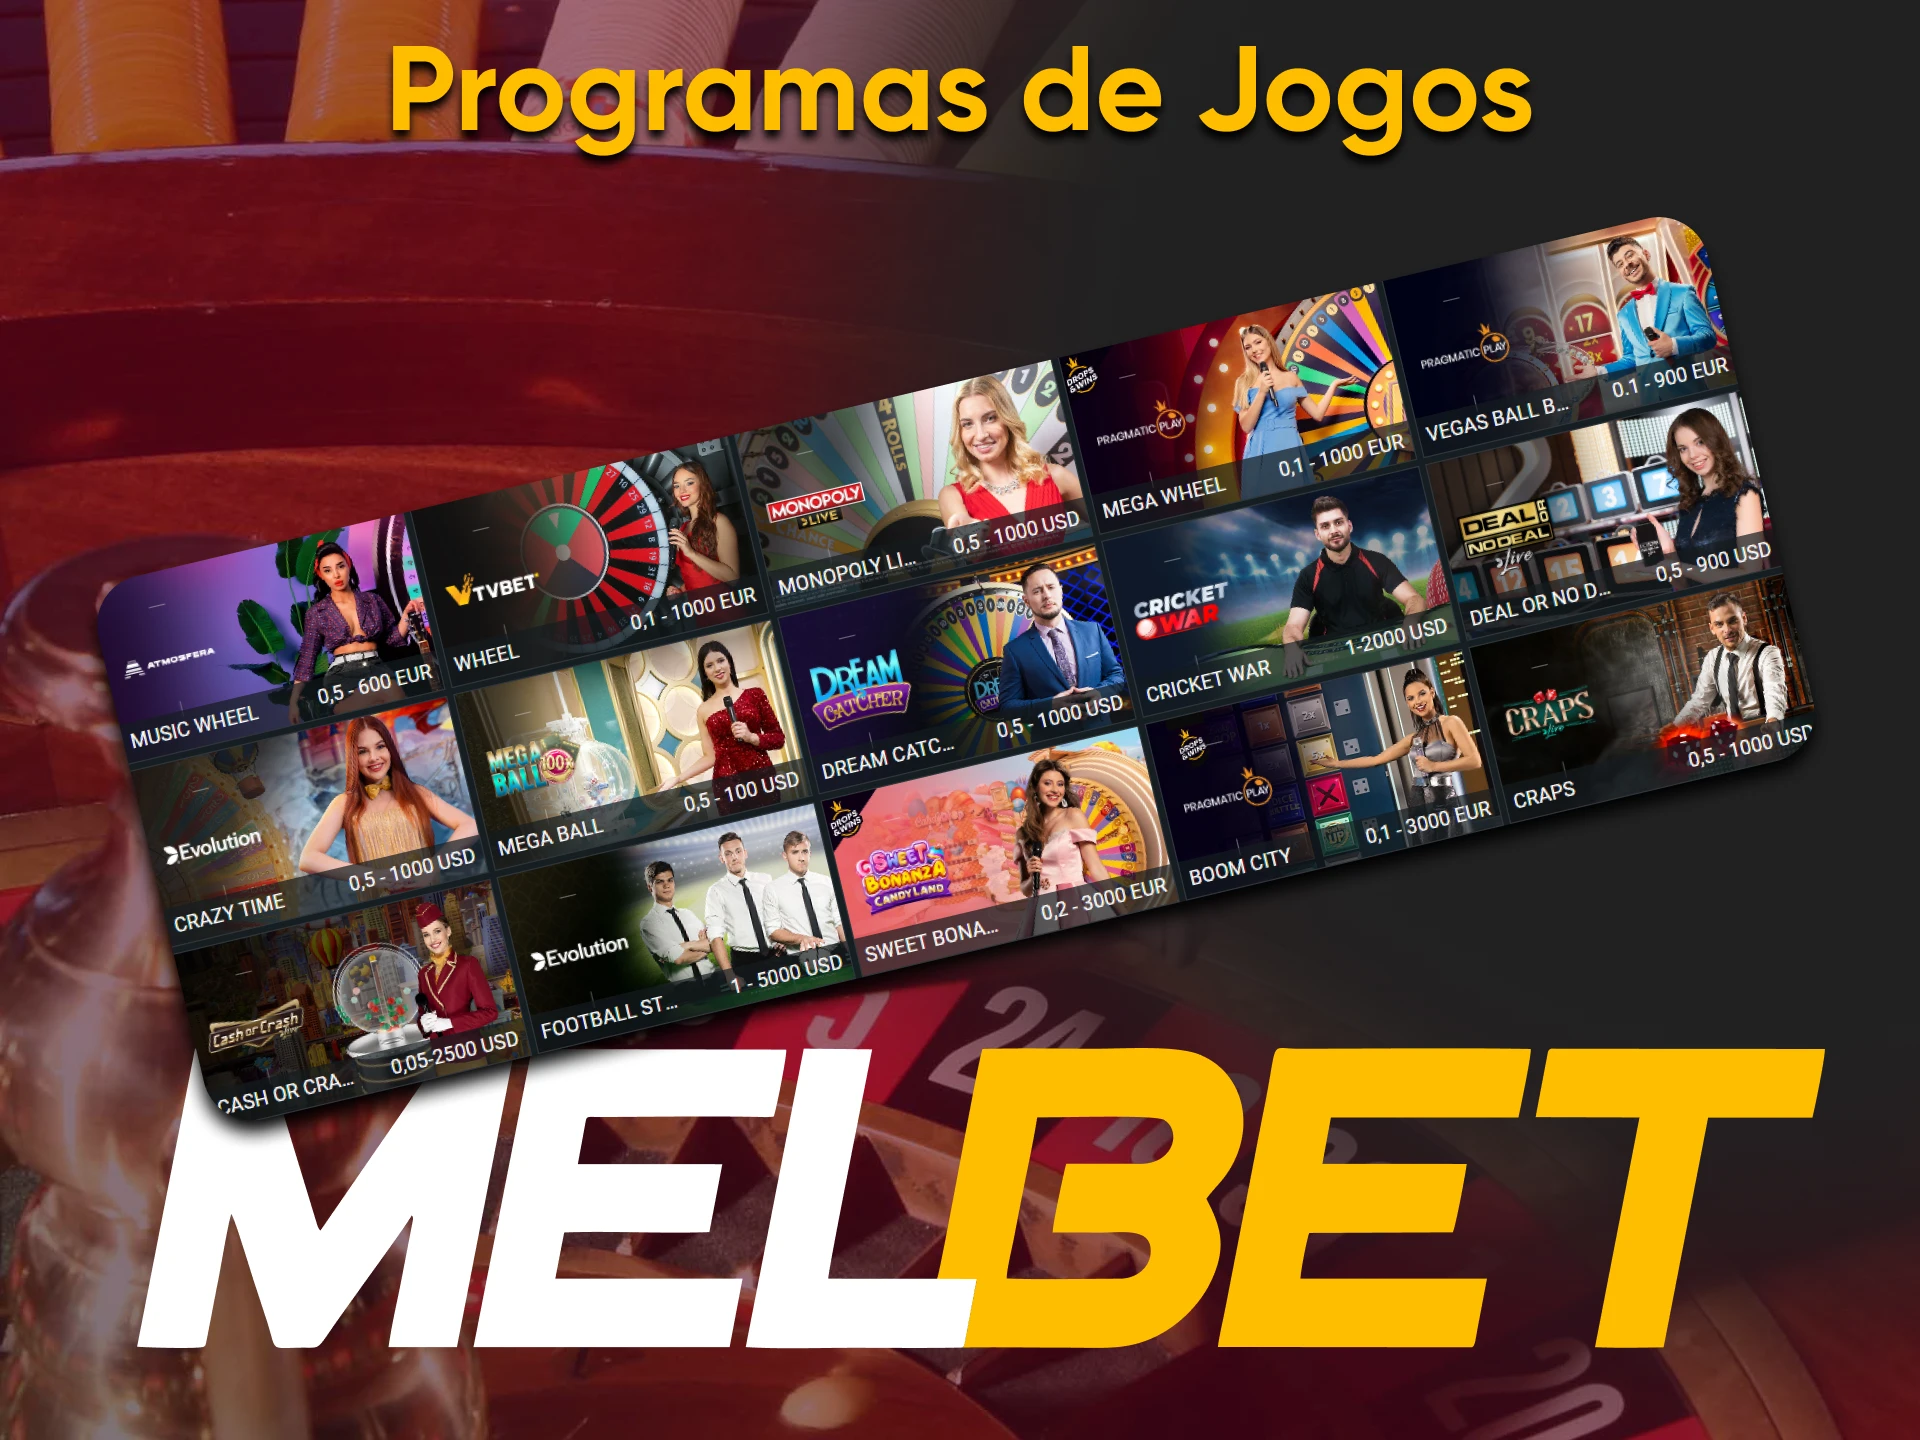 Para jogos de cassino ao vivo na Melbet, escolha Programas de Jogos.